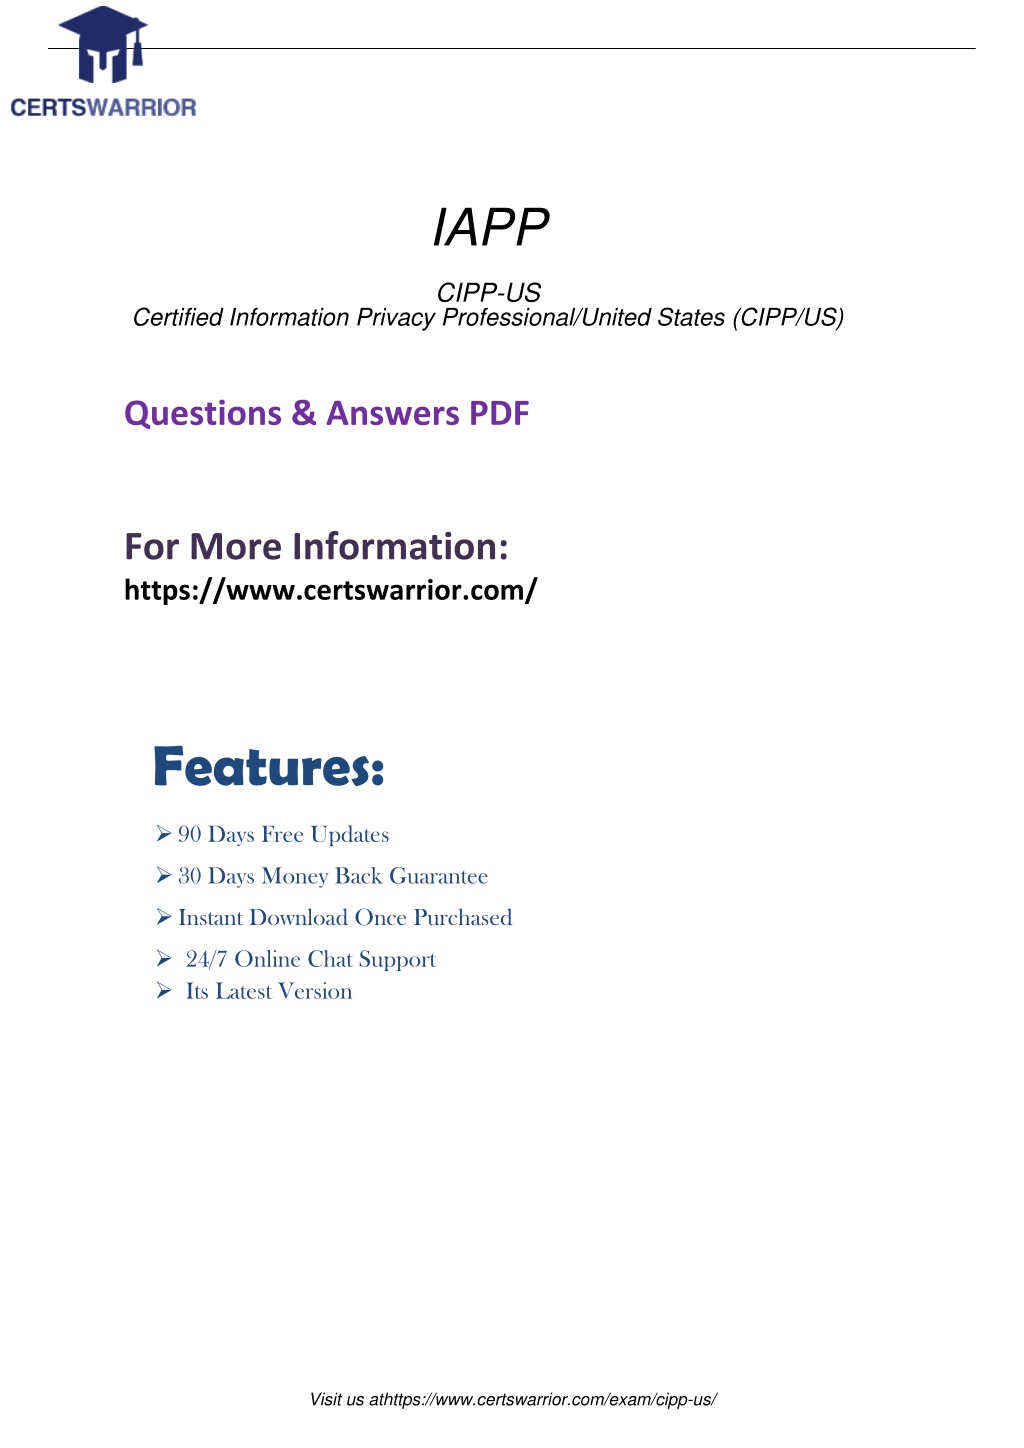 CIPP-C Echte Fragen, CIPP-C Prüfungsübungen & CIPP-C Prüfungs-Guide